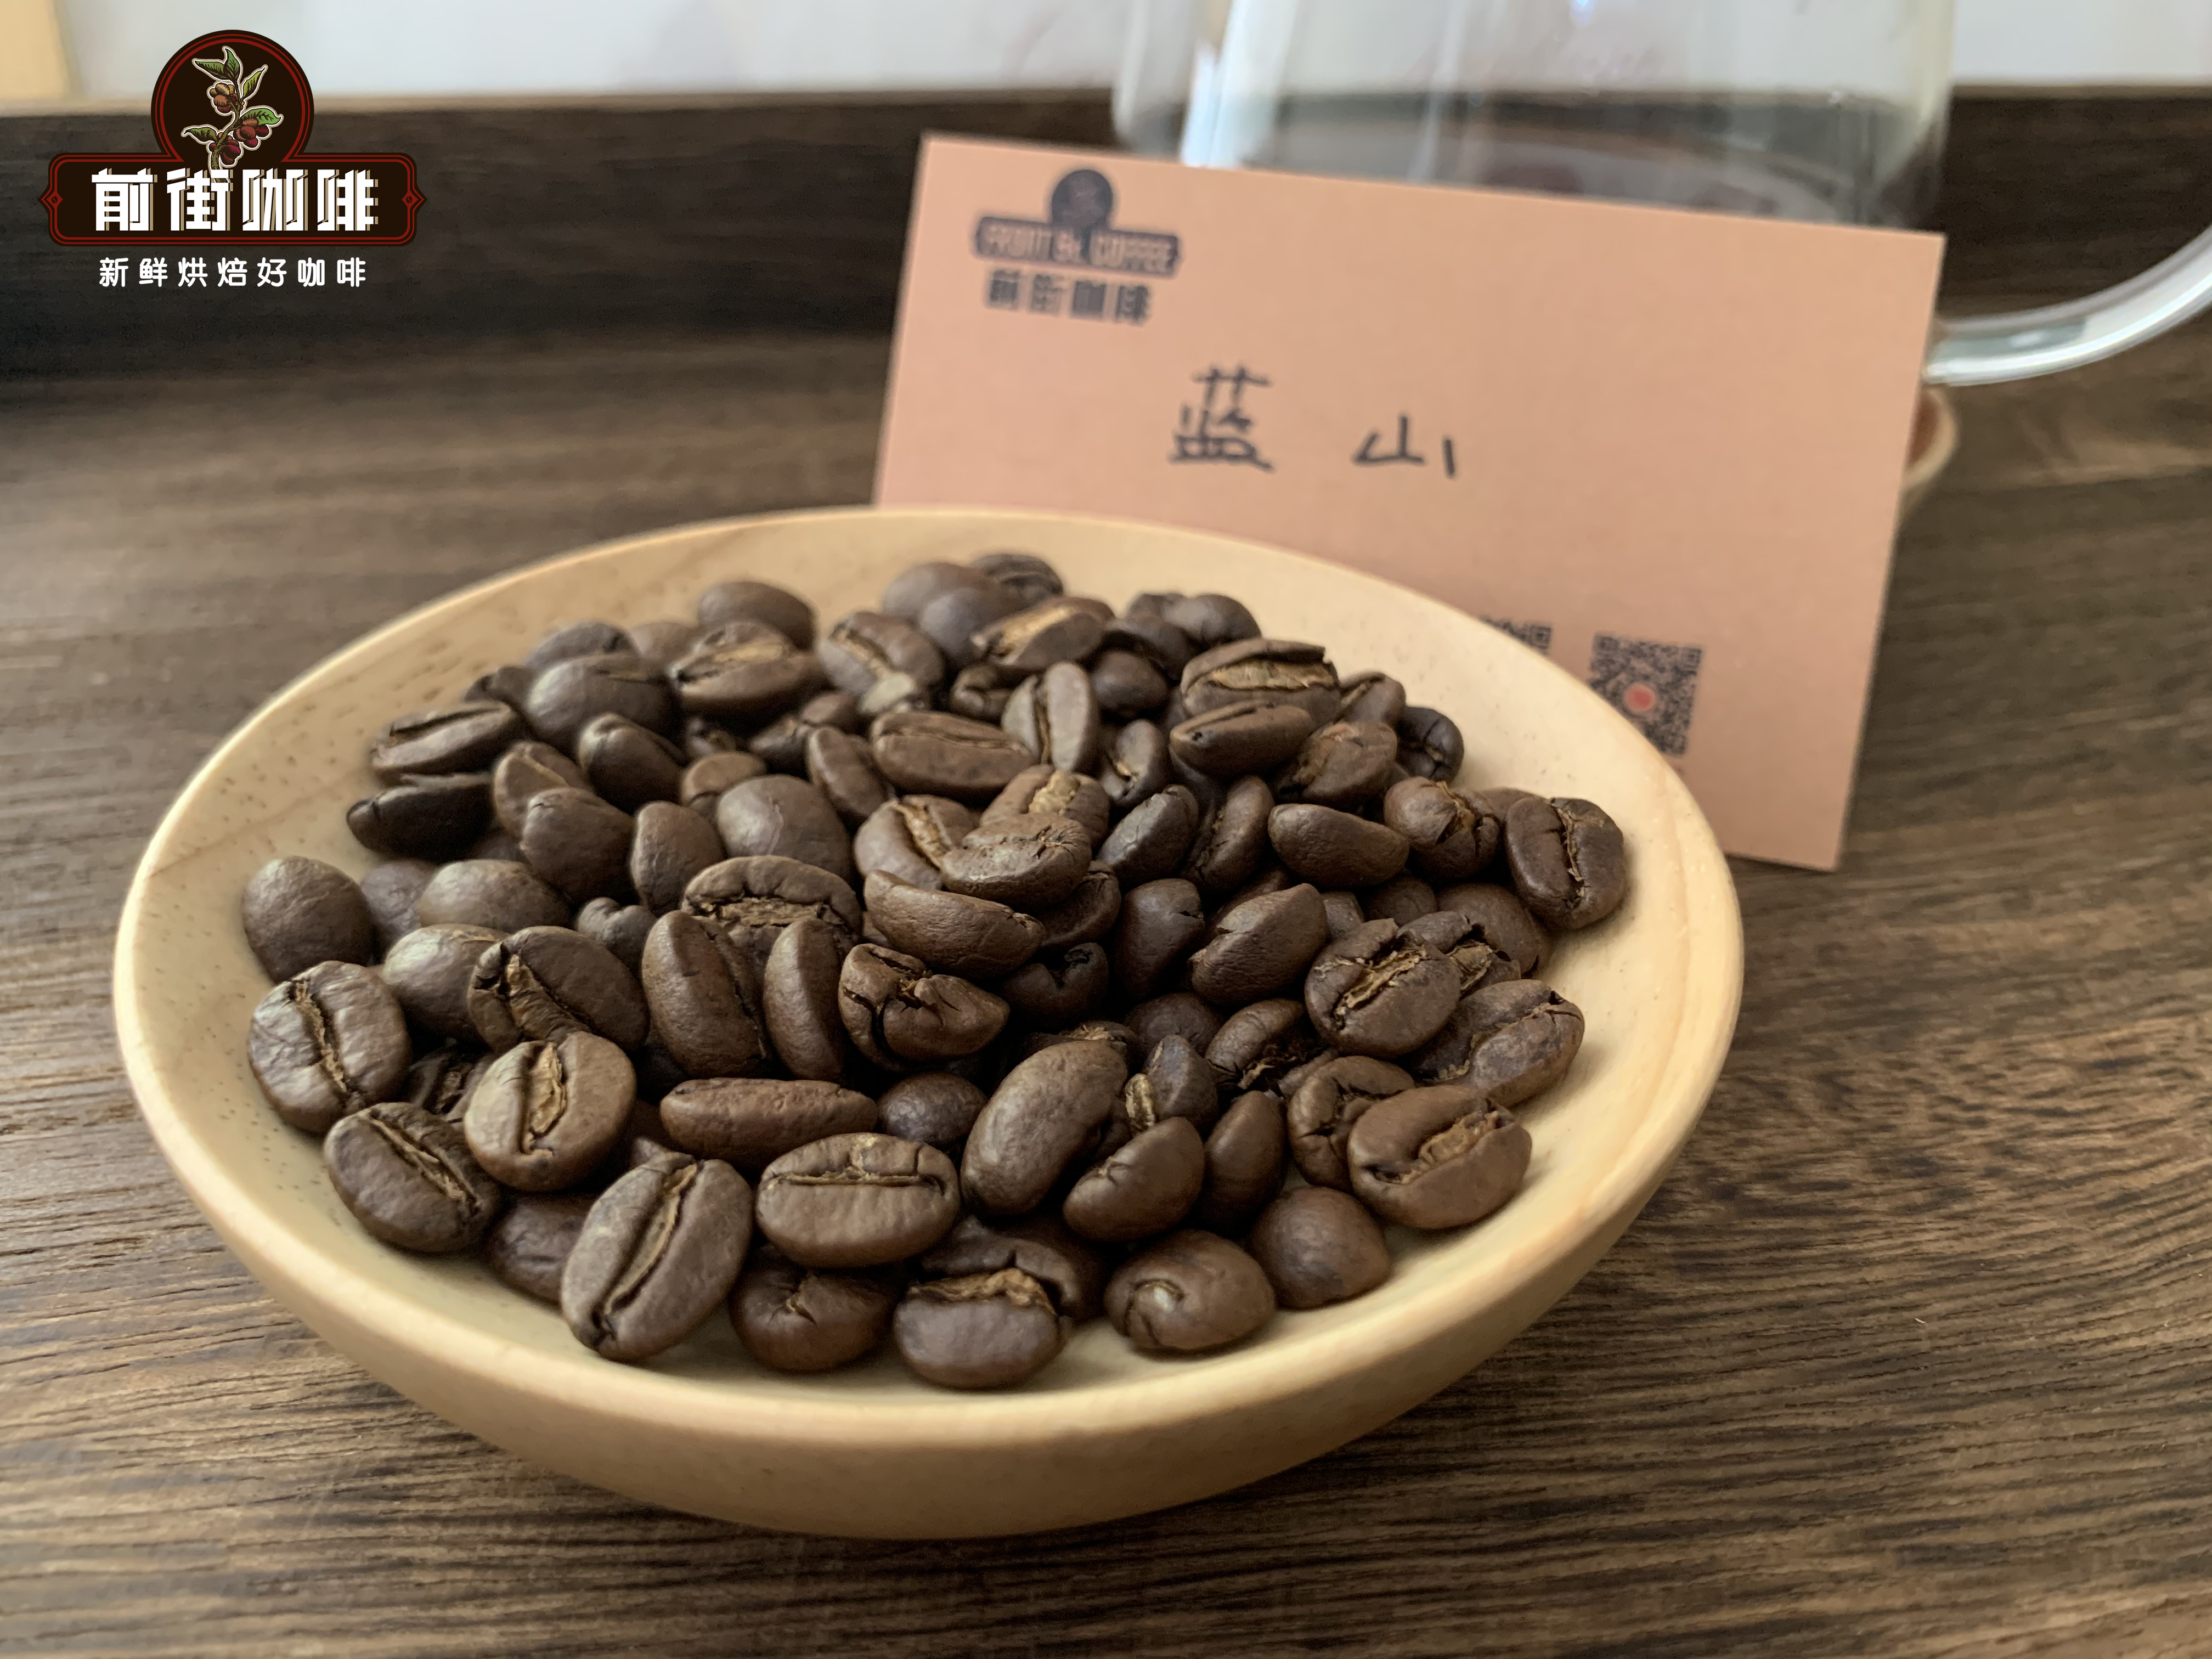 咖啡豆是如何分级的？精品咖啡豆1级2级分别指什么样的咖啡豆